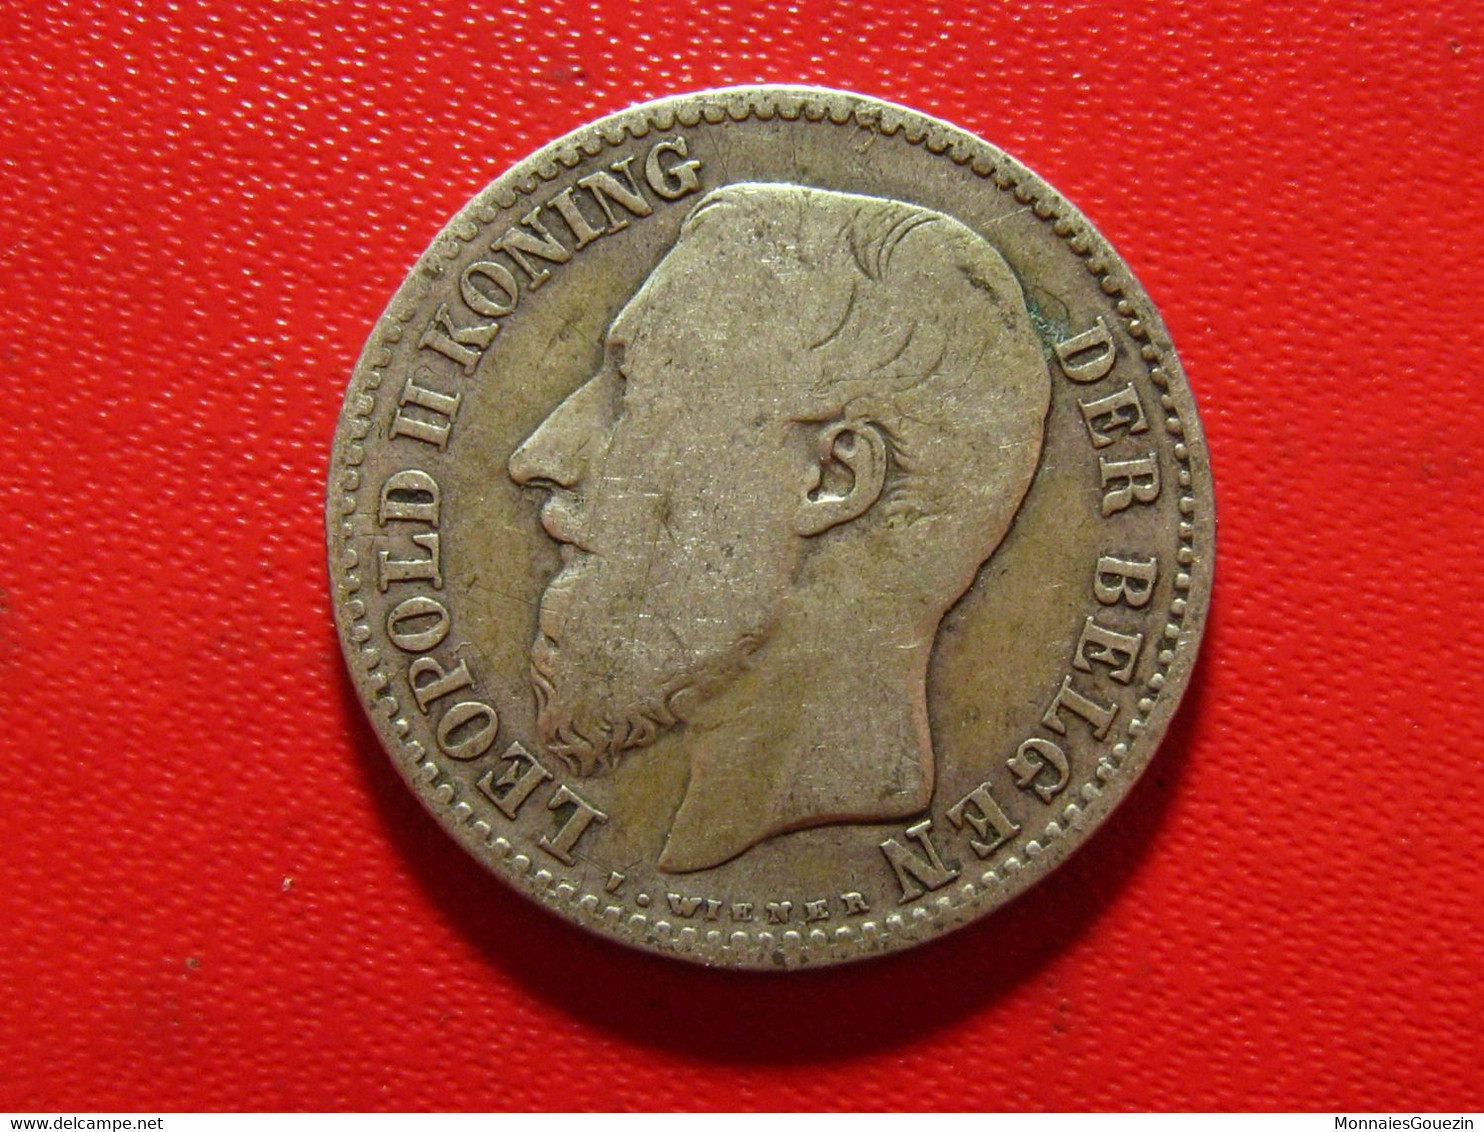 Belgique - Franc 1887 Leopold II 6152 - 1 Franc